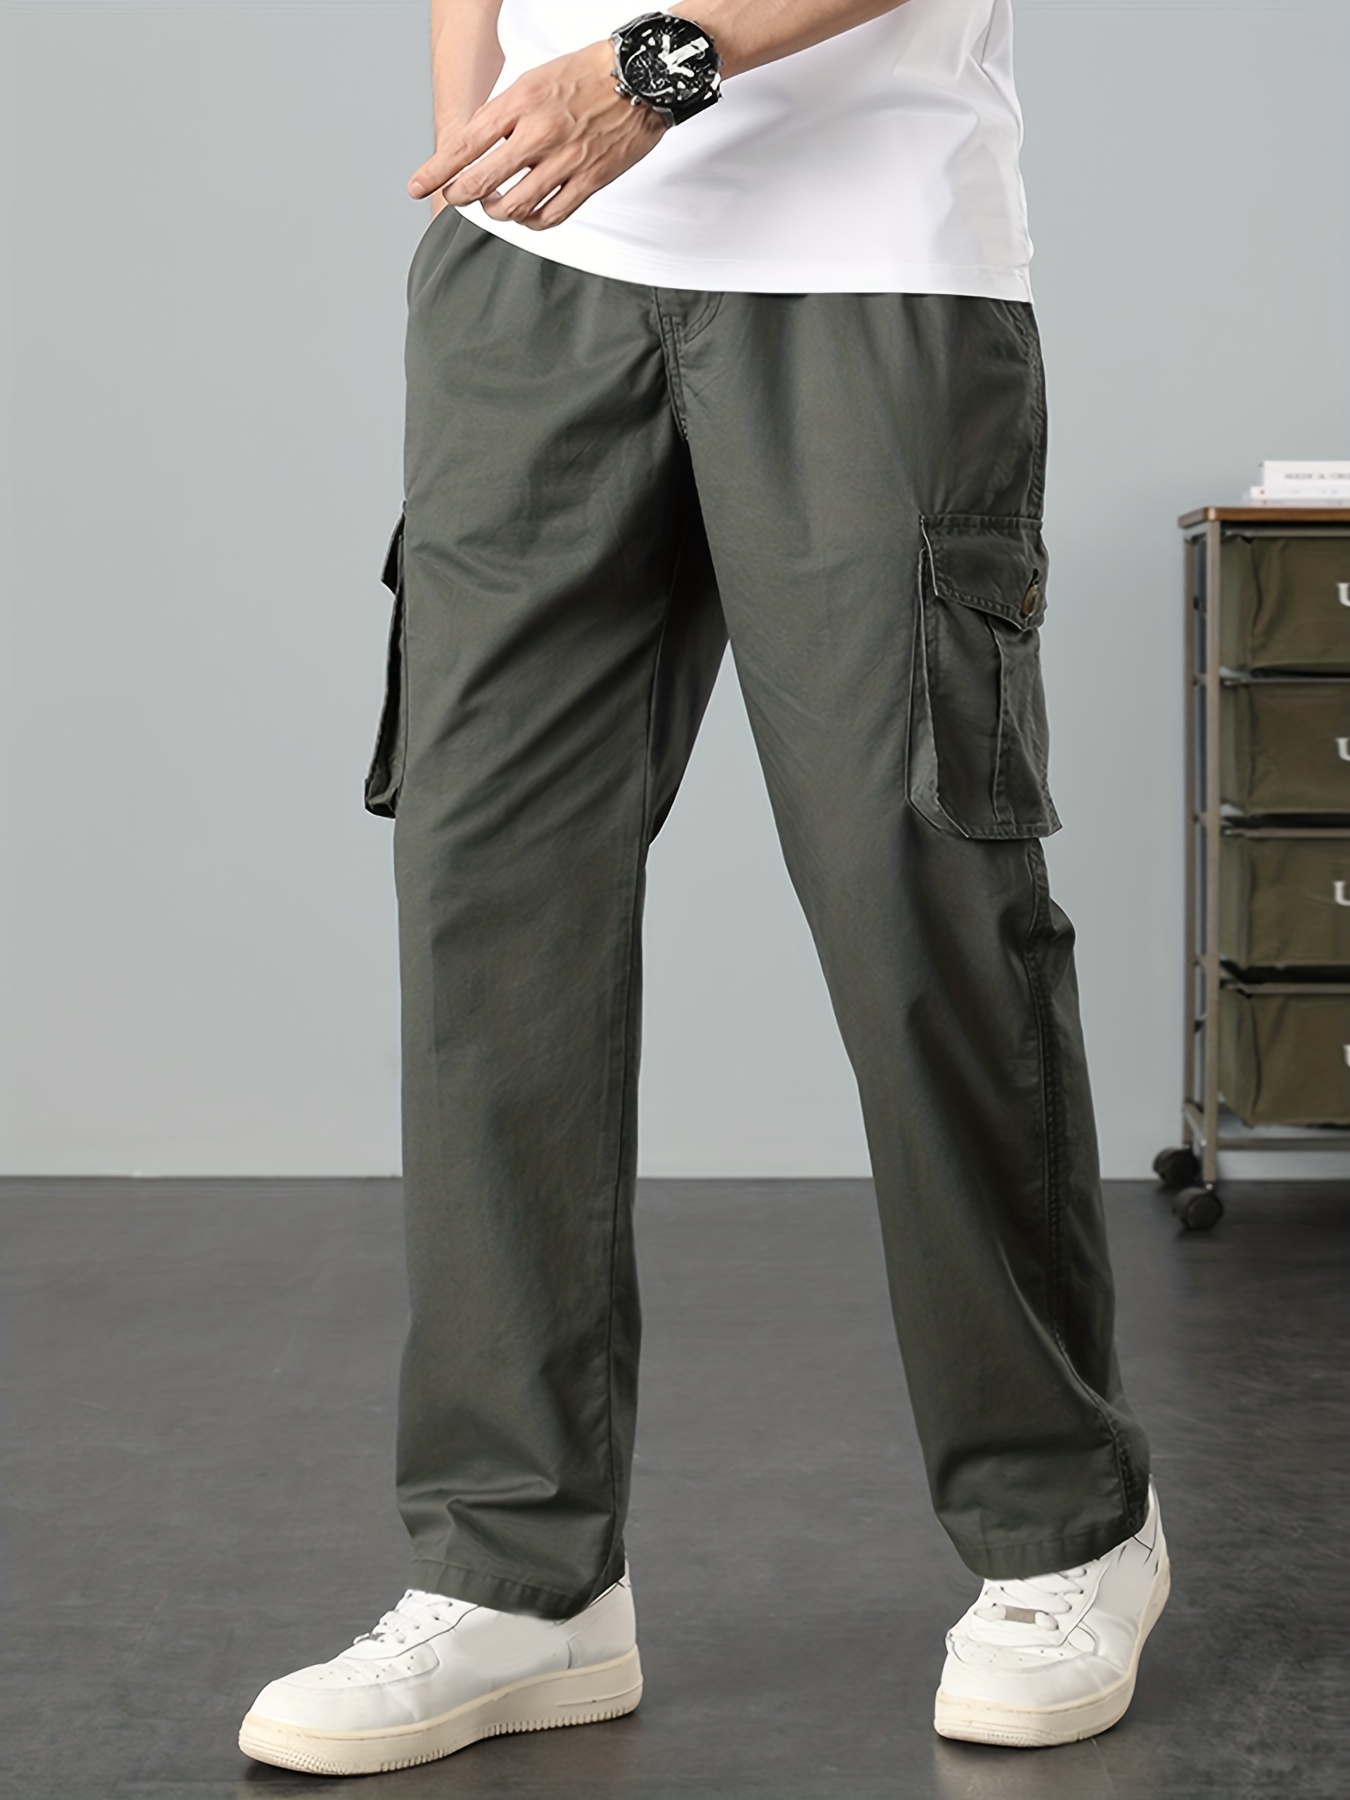 Pantalones Cargo De Talla * Para Hombre, Pantalones Cargo Verde Militar  Cómodos, Ropa Suelta De Gran Tamaño